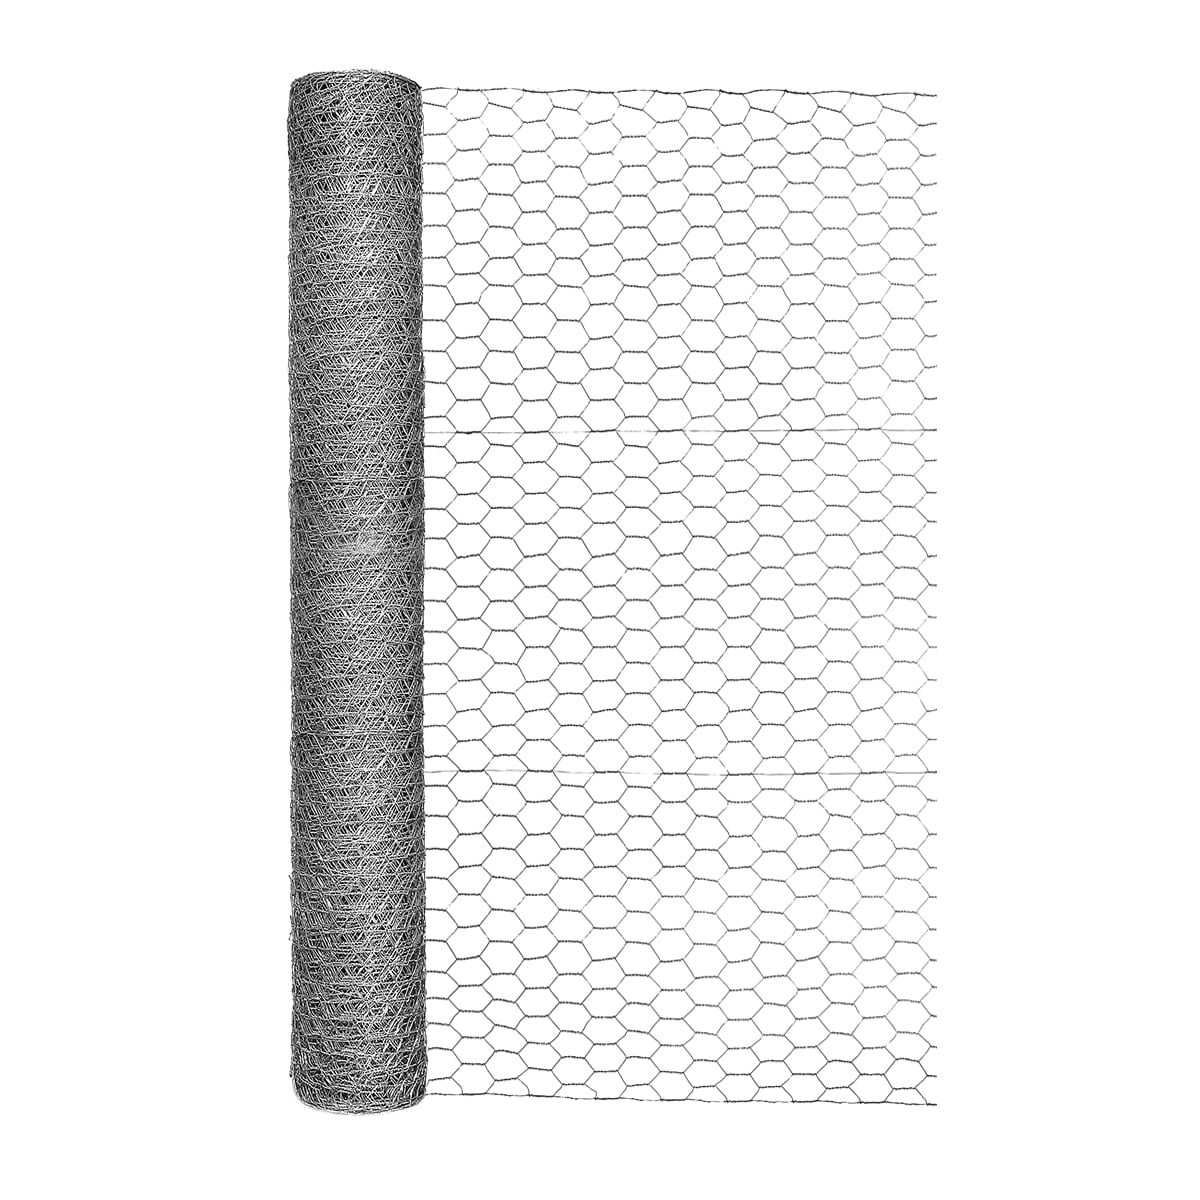 Square wire mesh Figure 2: Chicken wire mesh